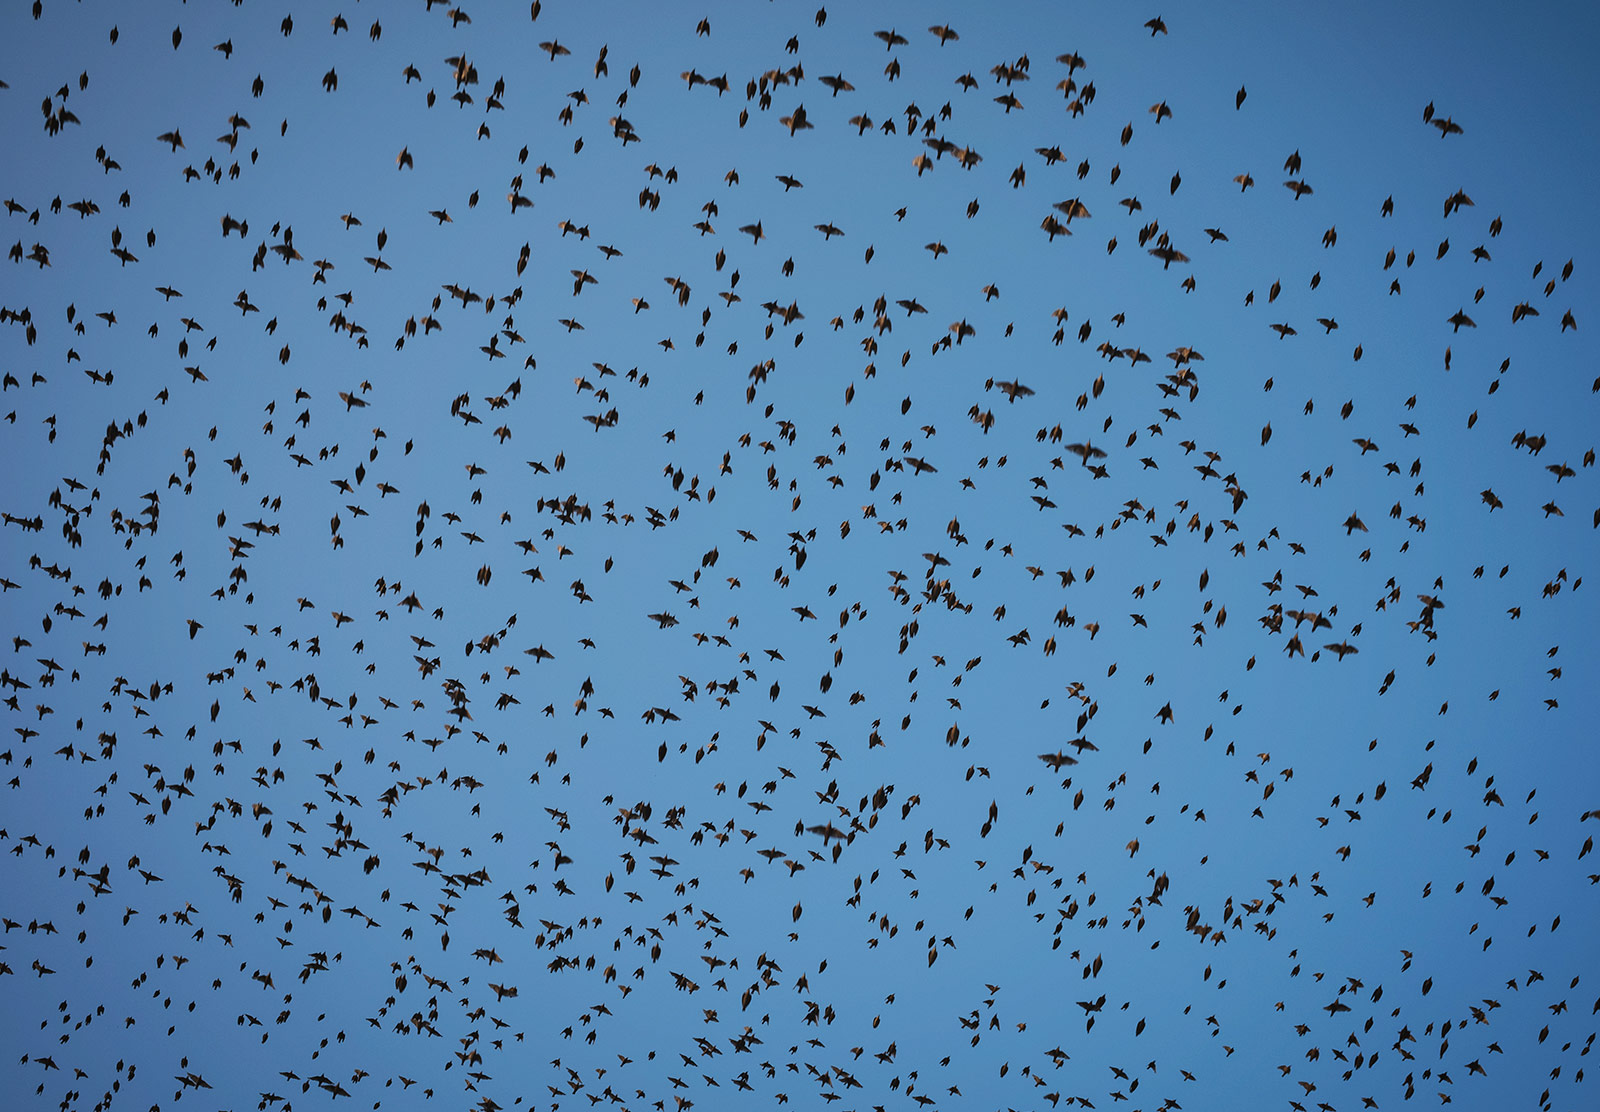 Birds in the sky